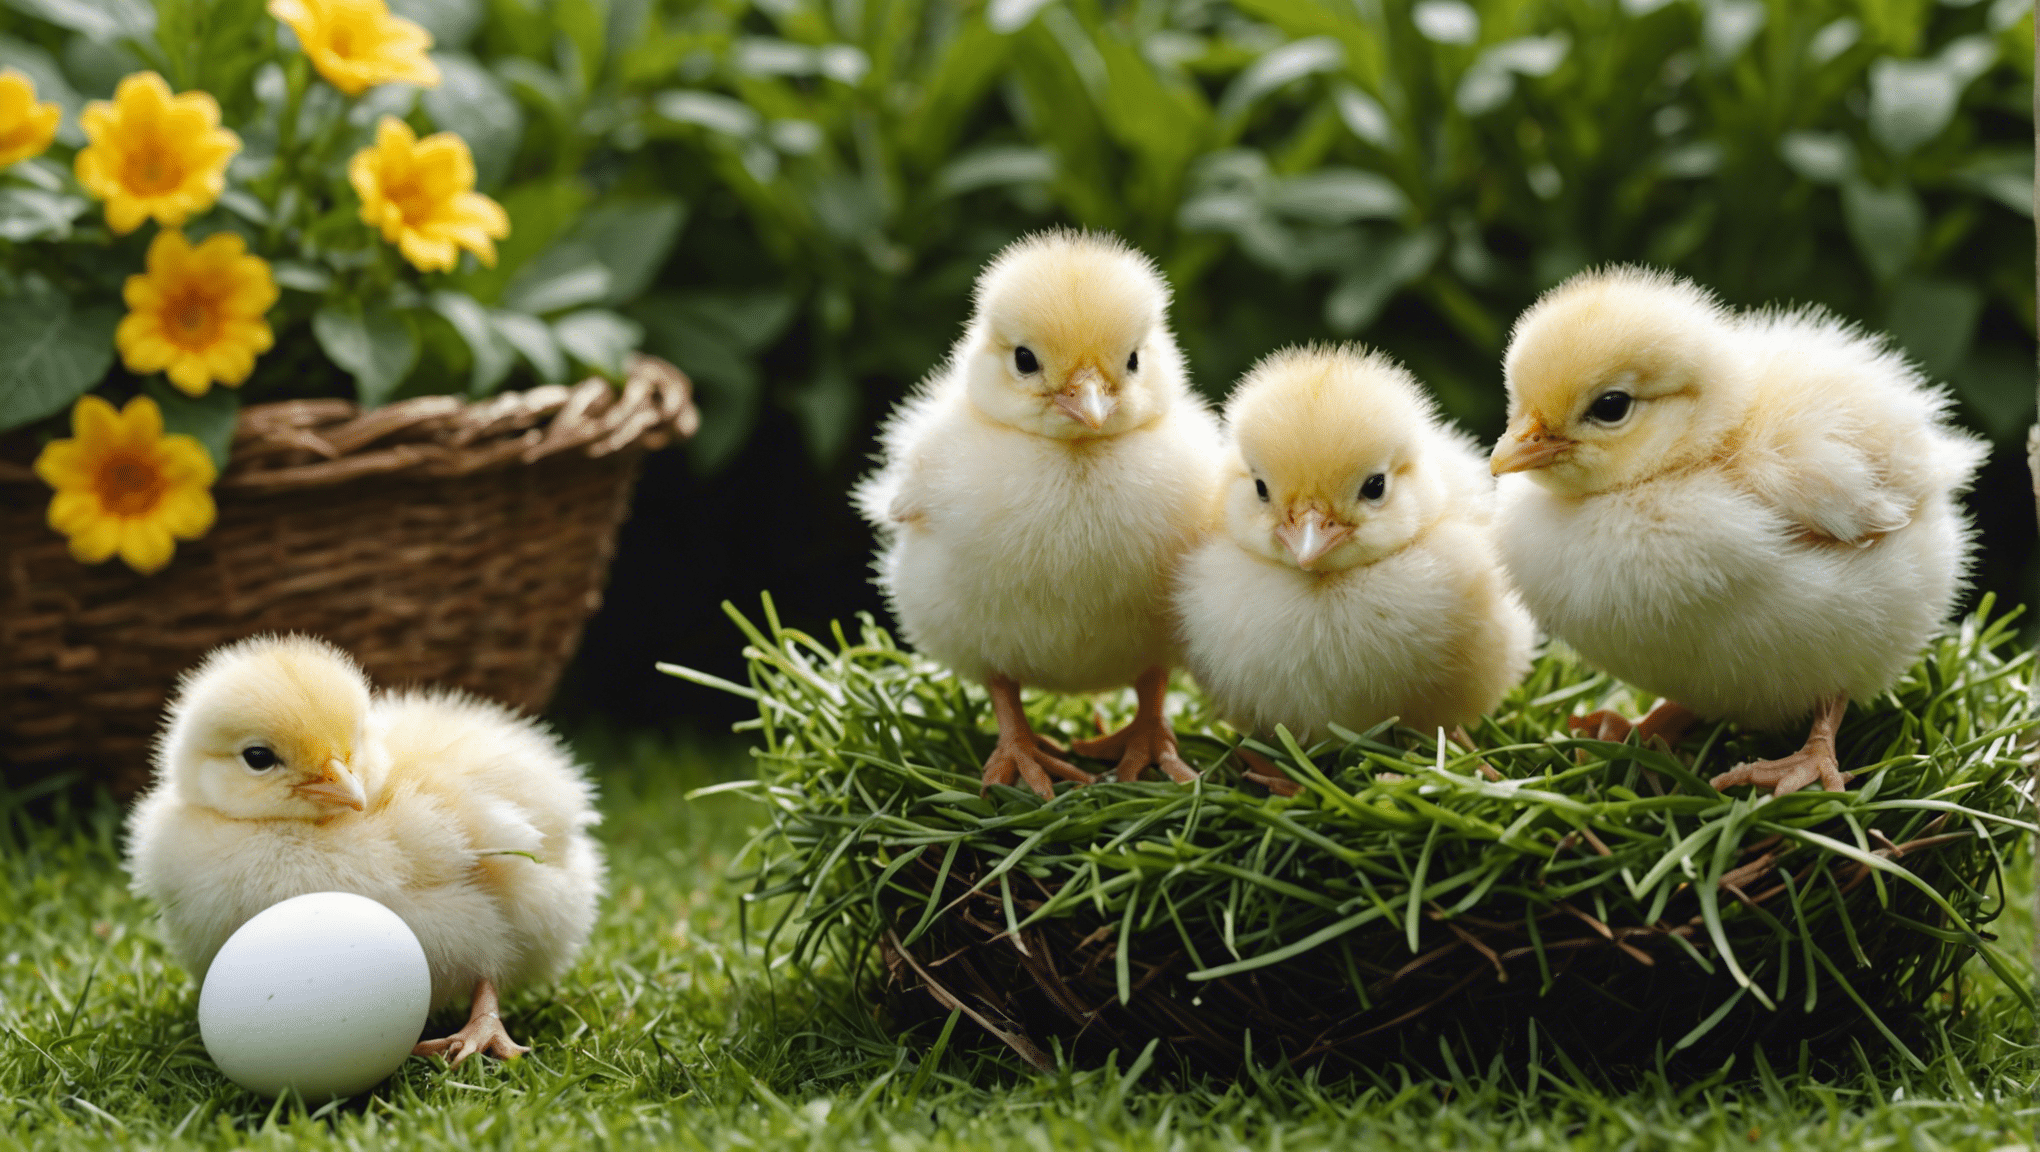 Aprenda a criar pollitos a partir de huevos con nuestra guía completa sobre cómo incubar y cuidar pollitos.